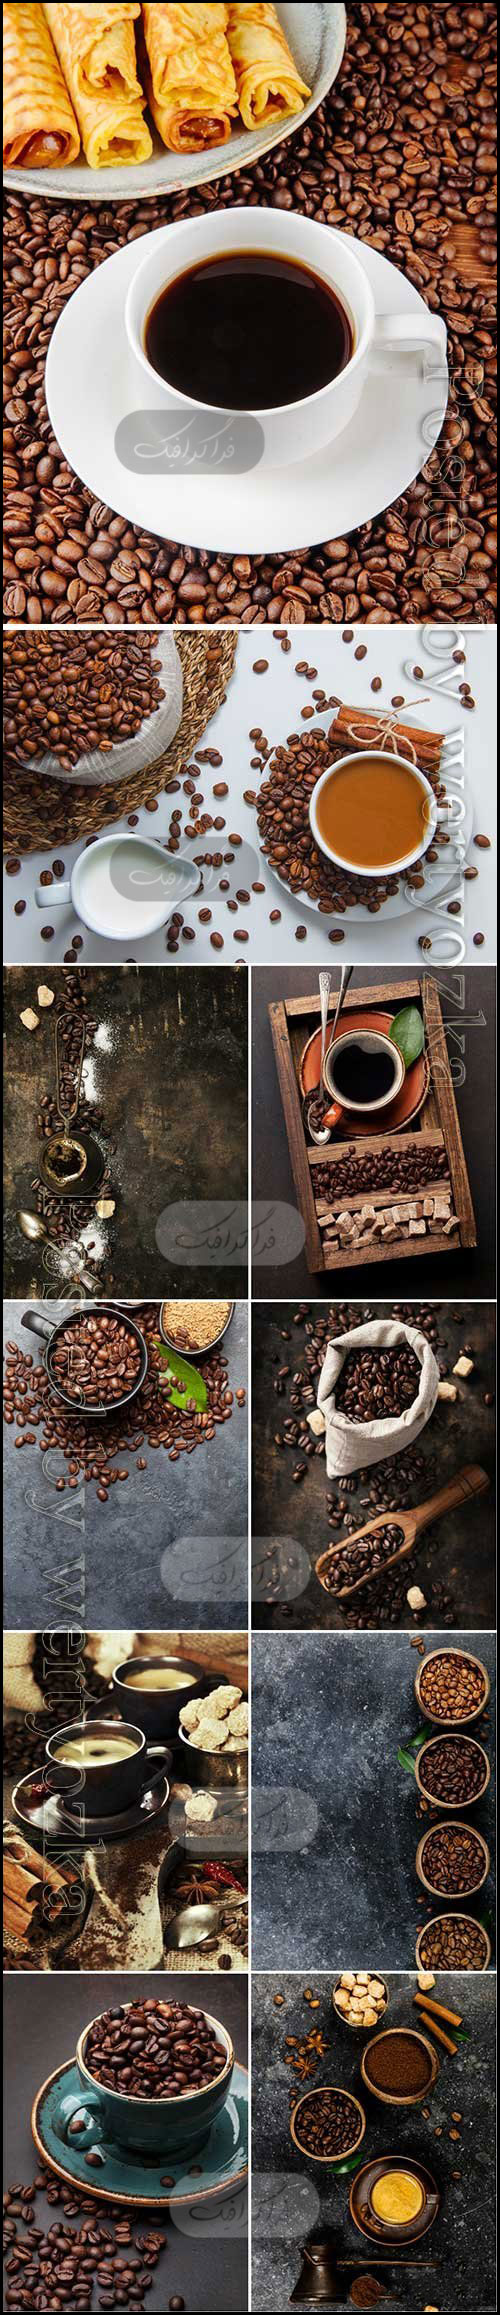 دانلود تصاویر استوک قهوه و فنجان قهوه - شماره 4